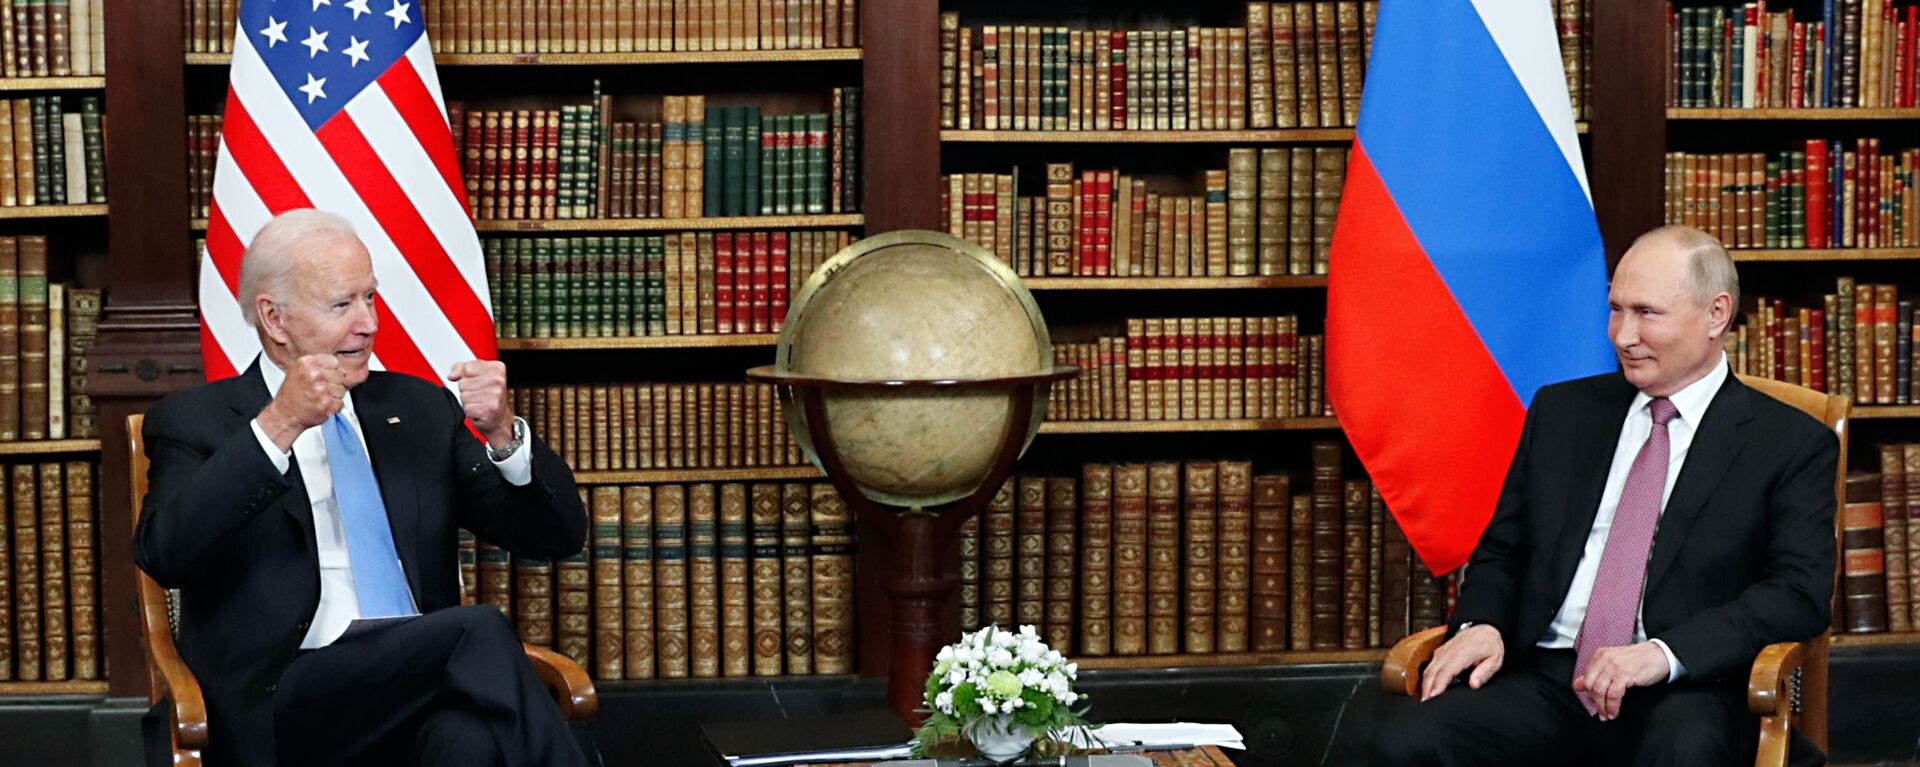 16 يونيو/ حزيران 2021 - صورة تجمع الرئيس الروسي  فلاديمير بوتين والرئيس الأمريكي جو بايدن في  فيلا لا غرانج في جنيف السويسرية. - سبوتنيك عربي, 1920, 30.12.2022